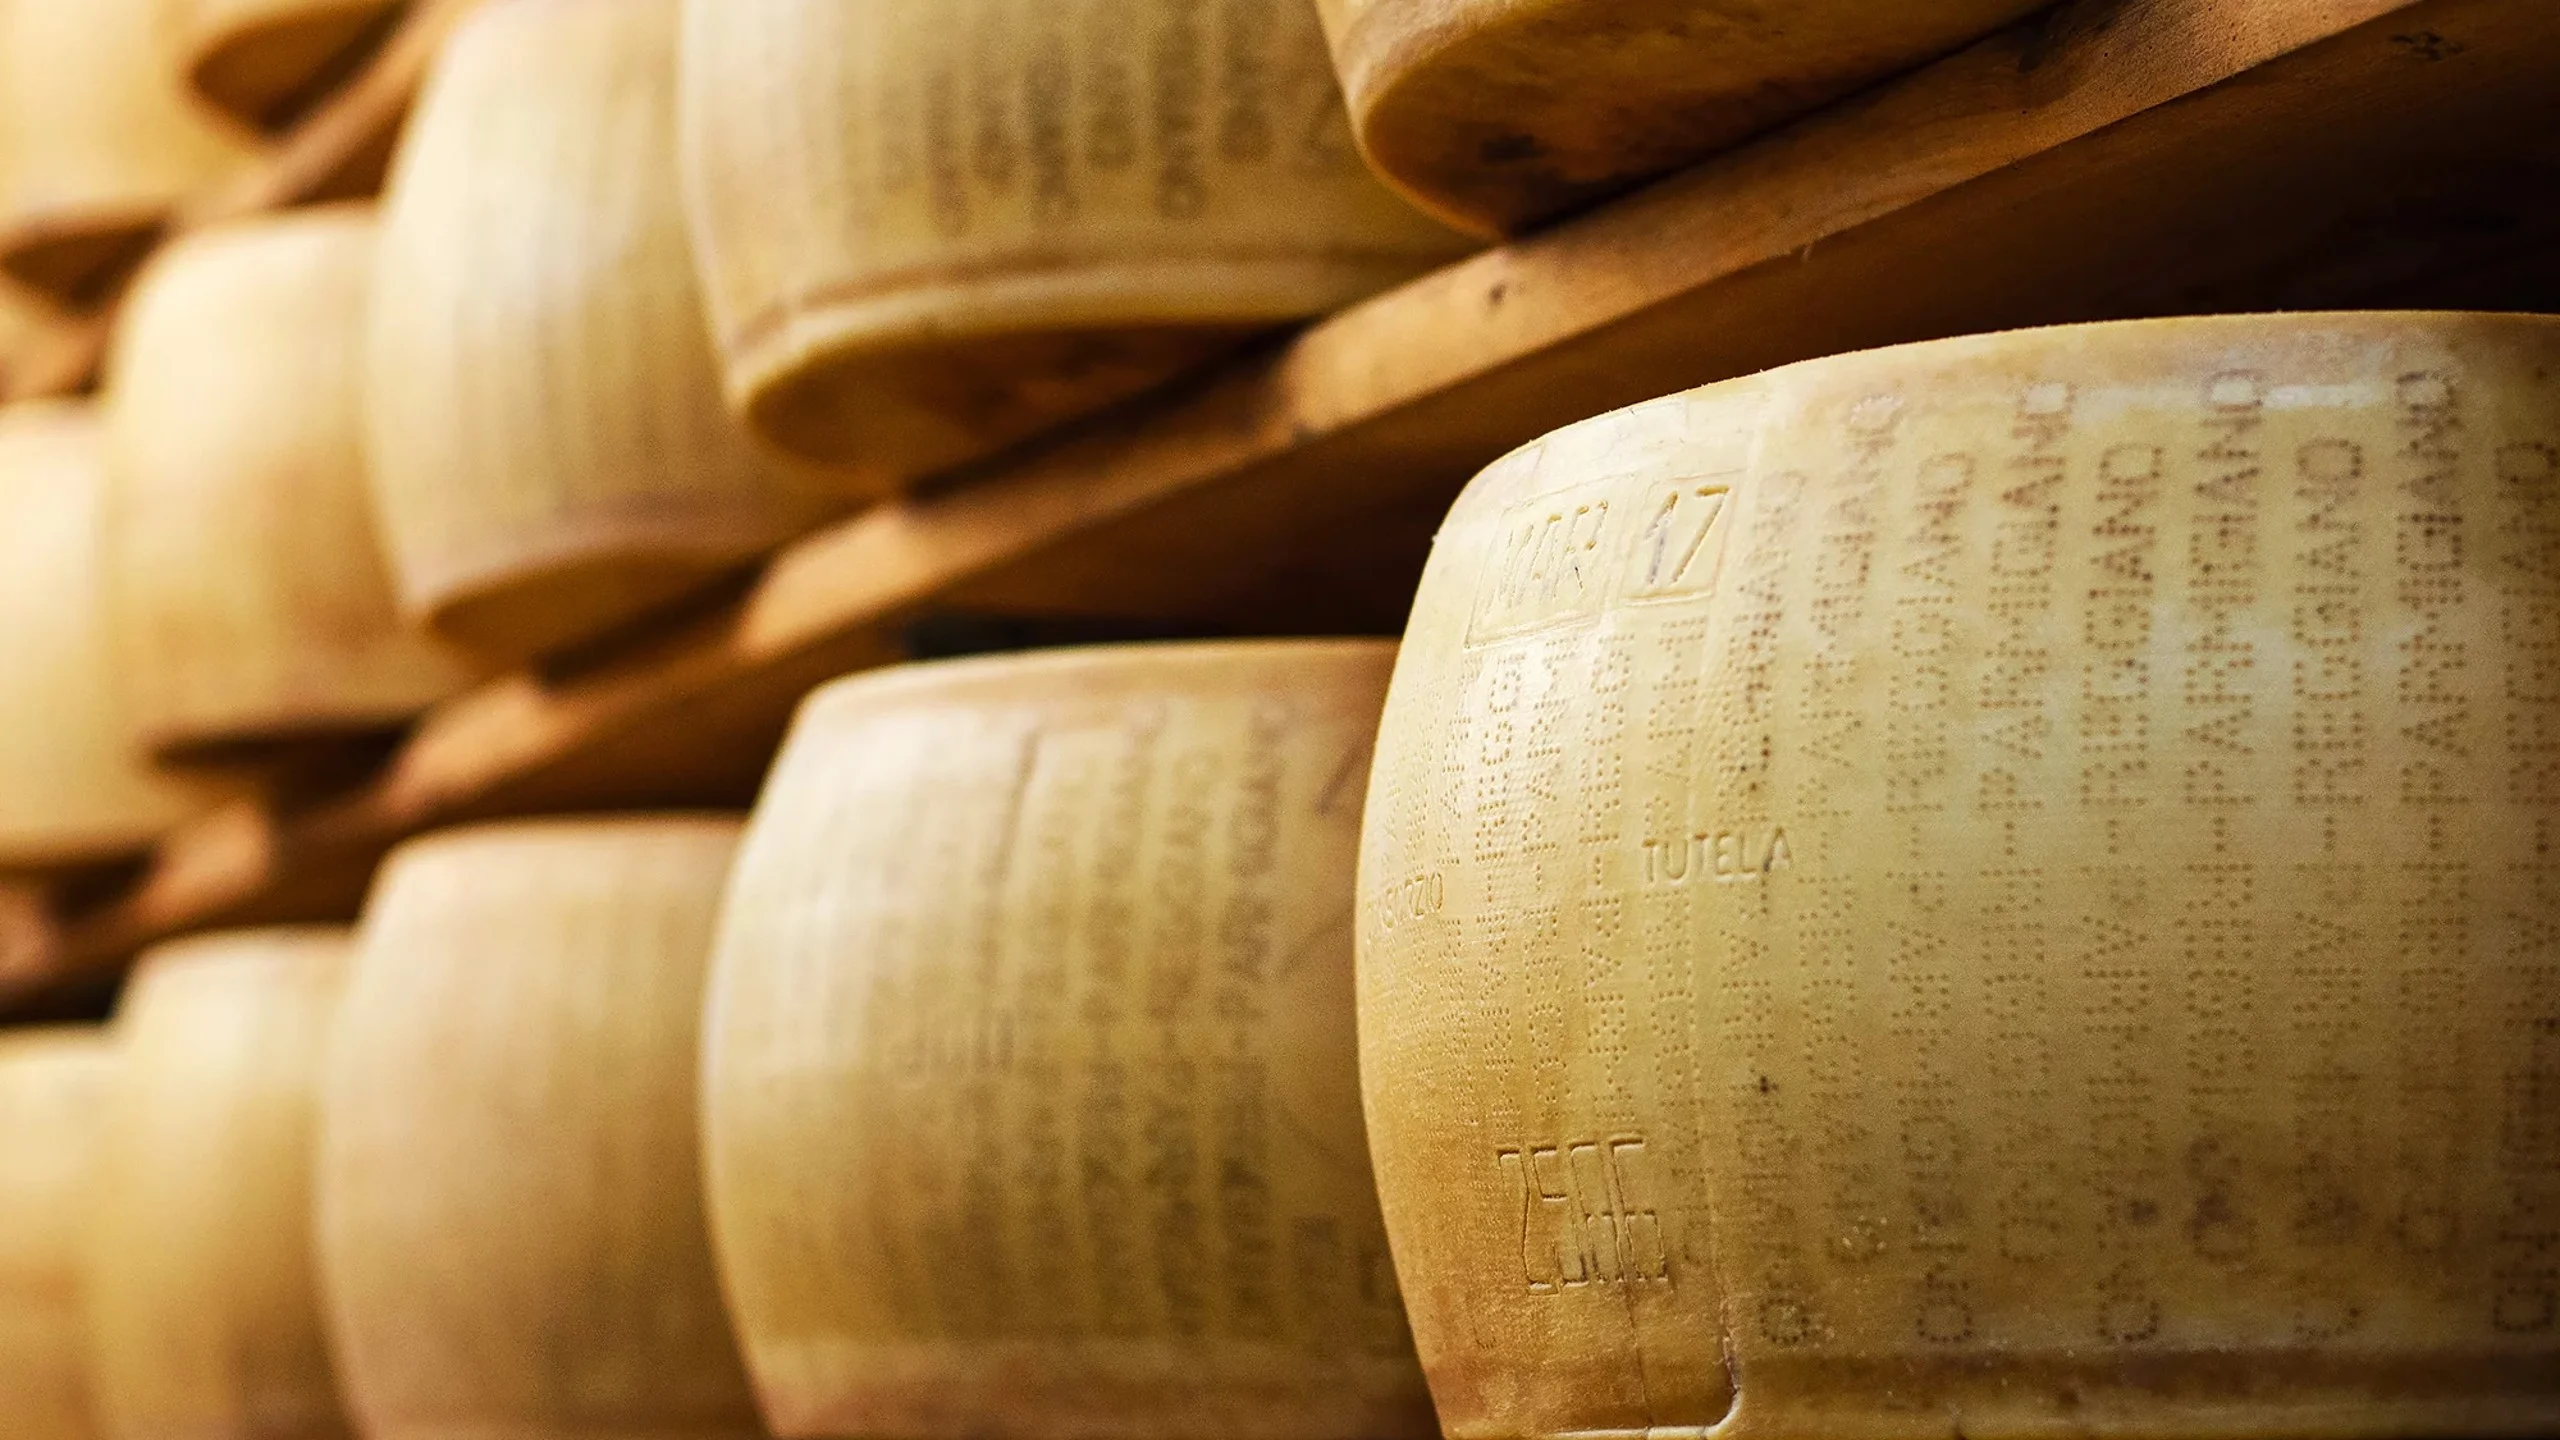 Los productores de queso Parmigiano Reggiano están incorporando pequeños rastreadores en las cortezas para combatir el fraude del queso